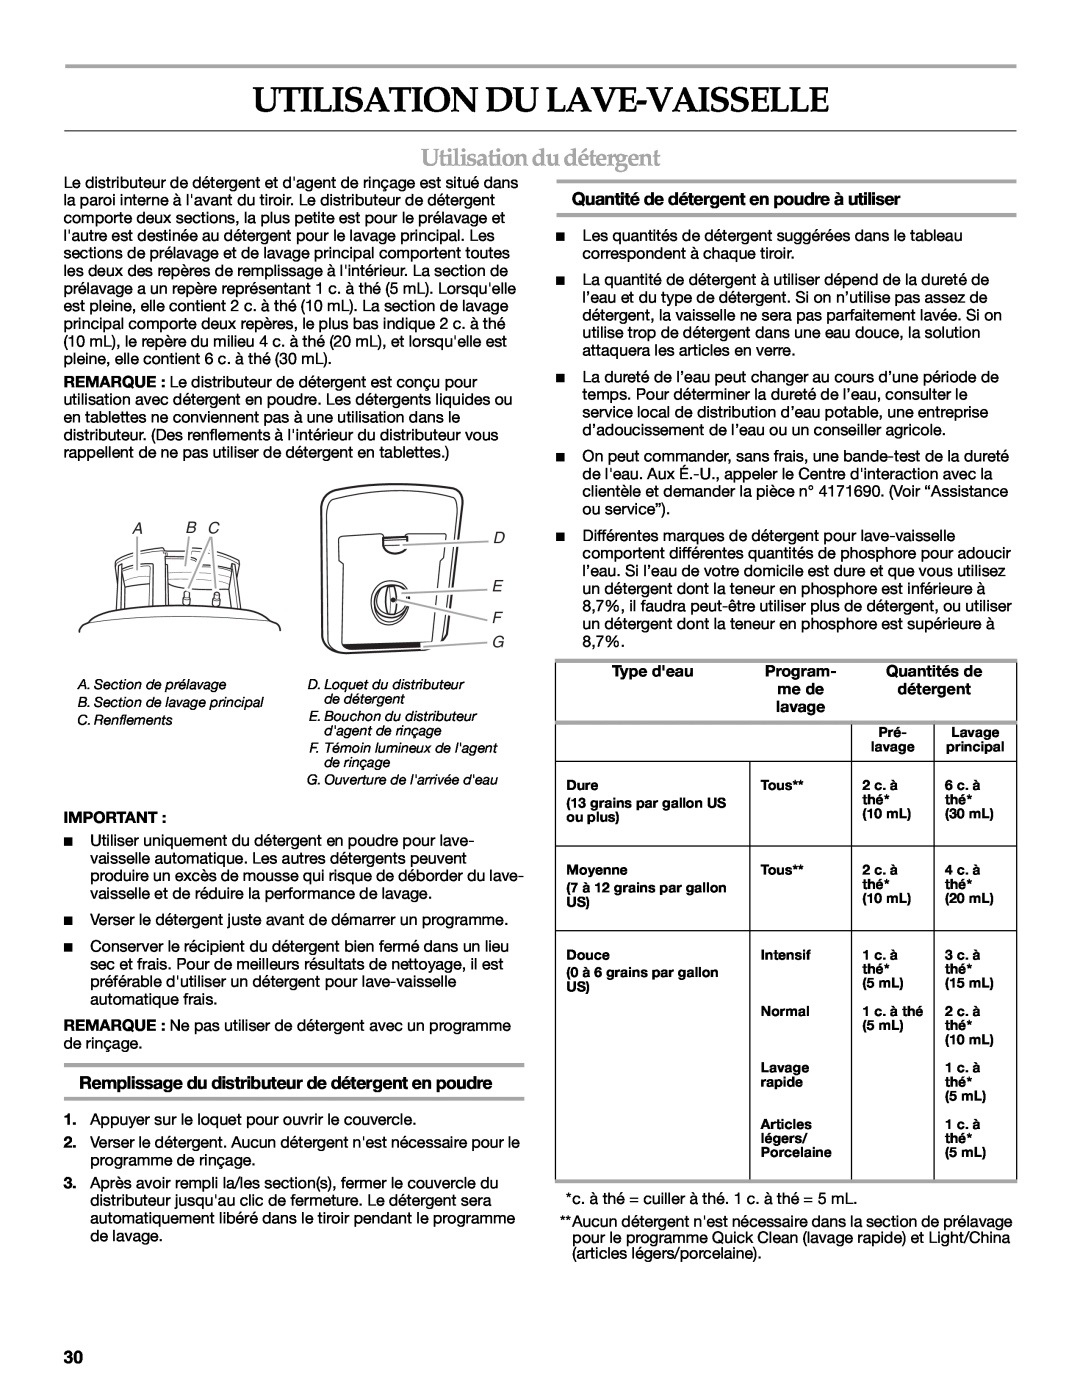 KitchenAid KUDD01DPPA Utilisation Du Lave-Vaisselle, Utilisation du détergent, Quantité de détergent en poudre à utiliser 